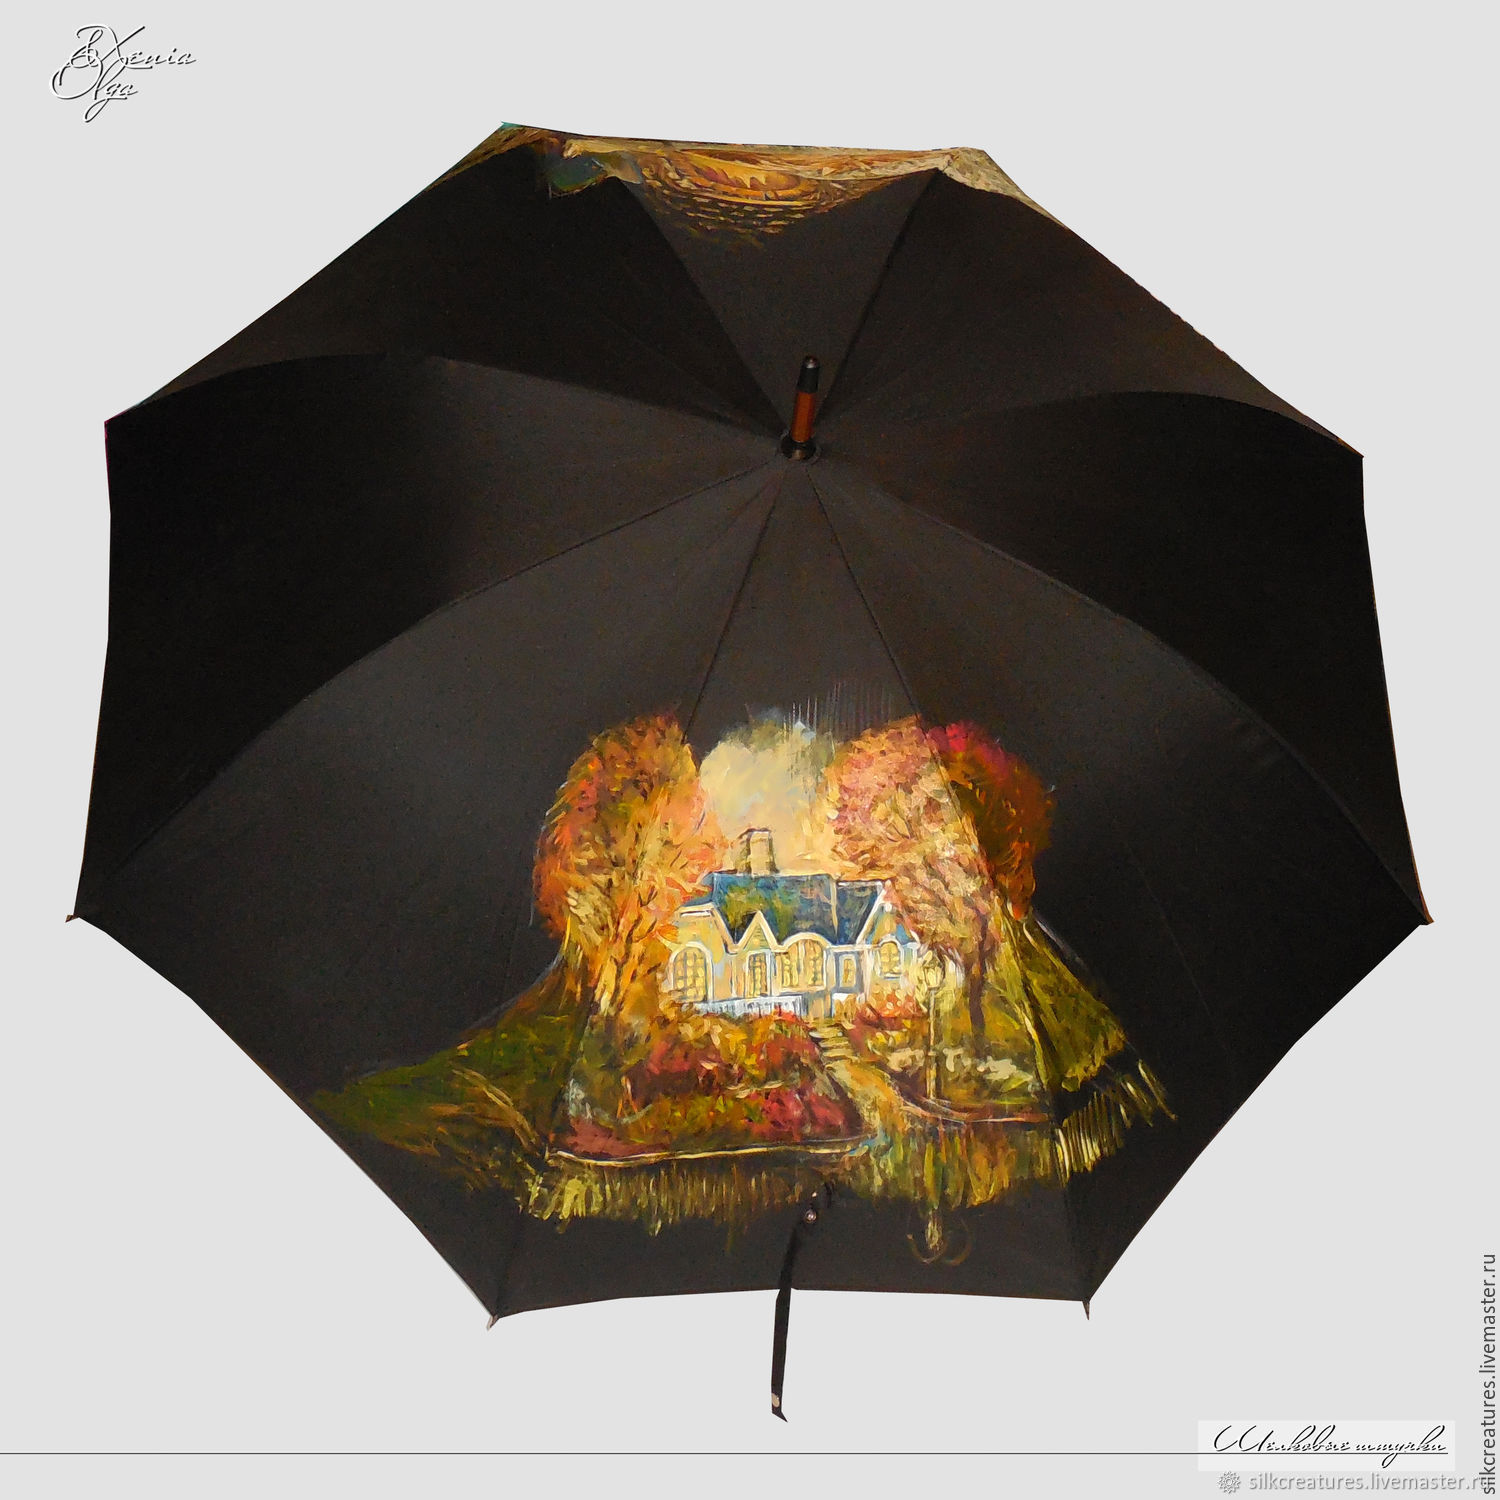 Зонтик спб. Зонт FALCONEYES "Urk-60tgs". Зонт расписной. Необычные зонты. Зонт с Питером.